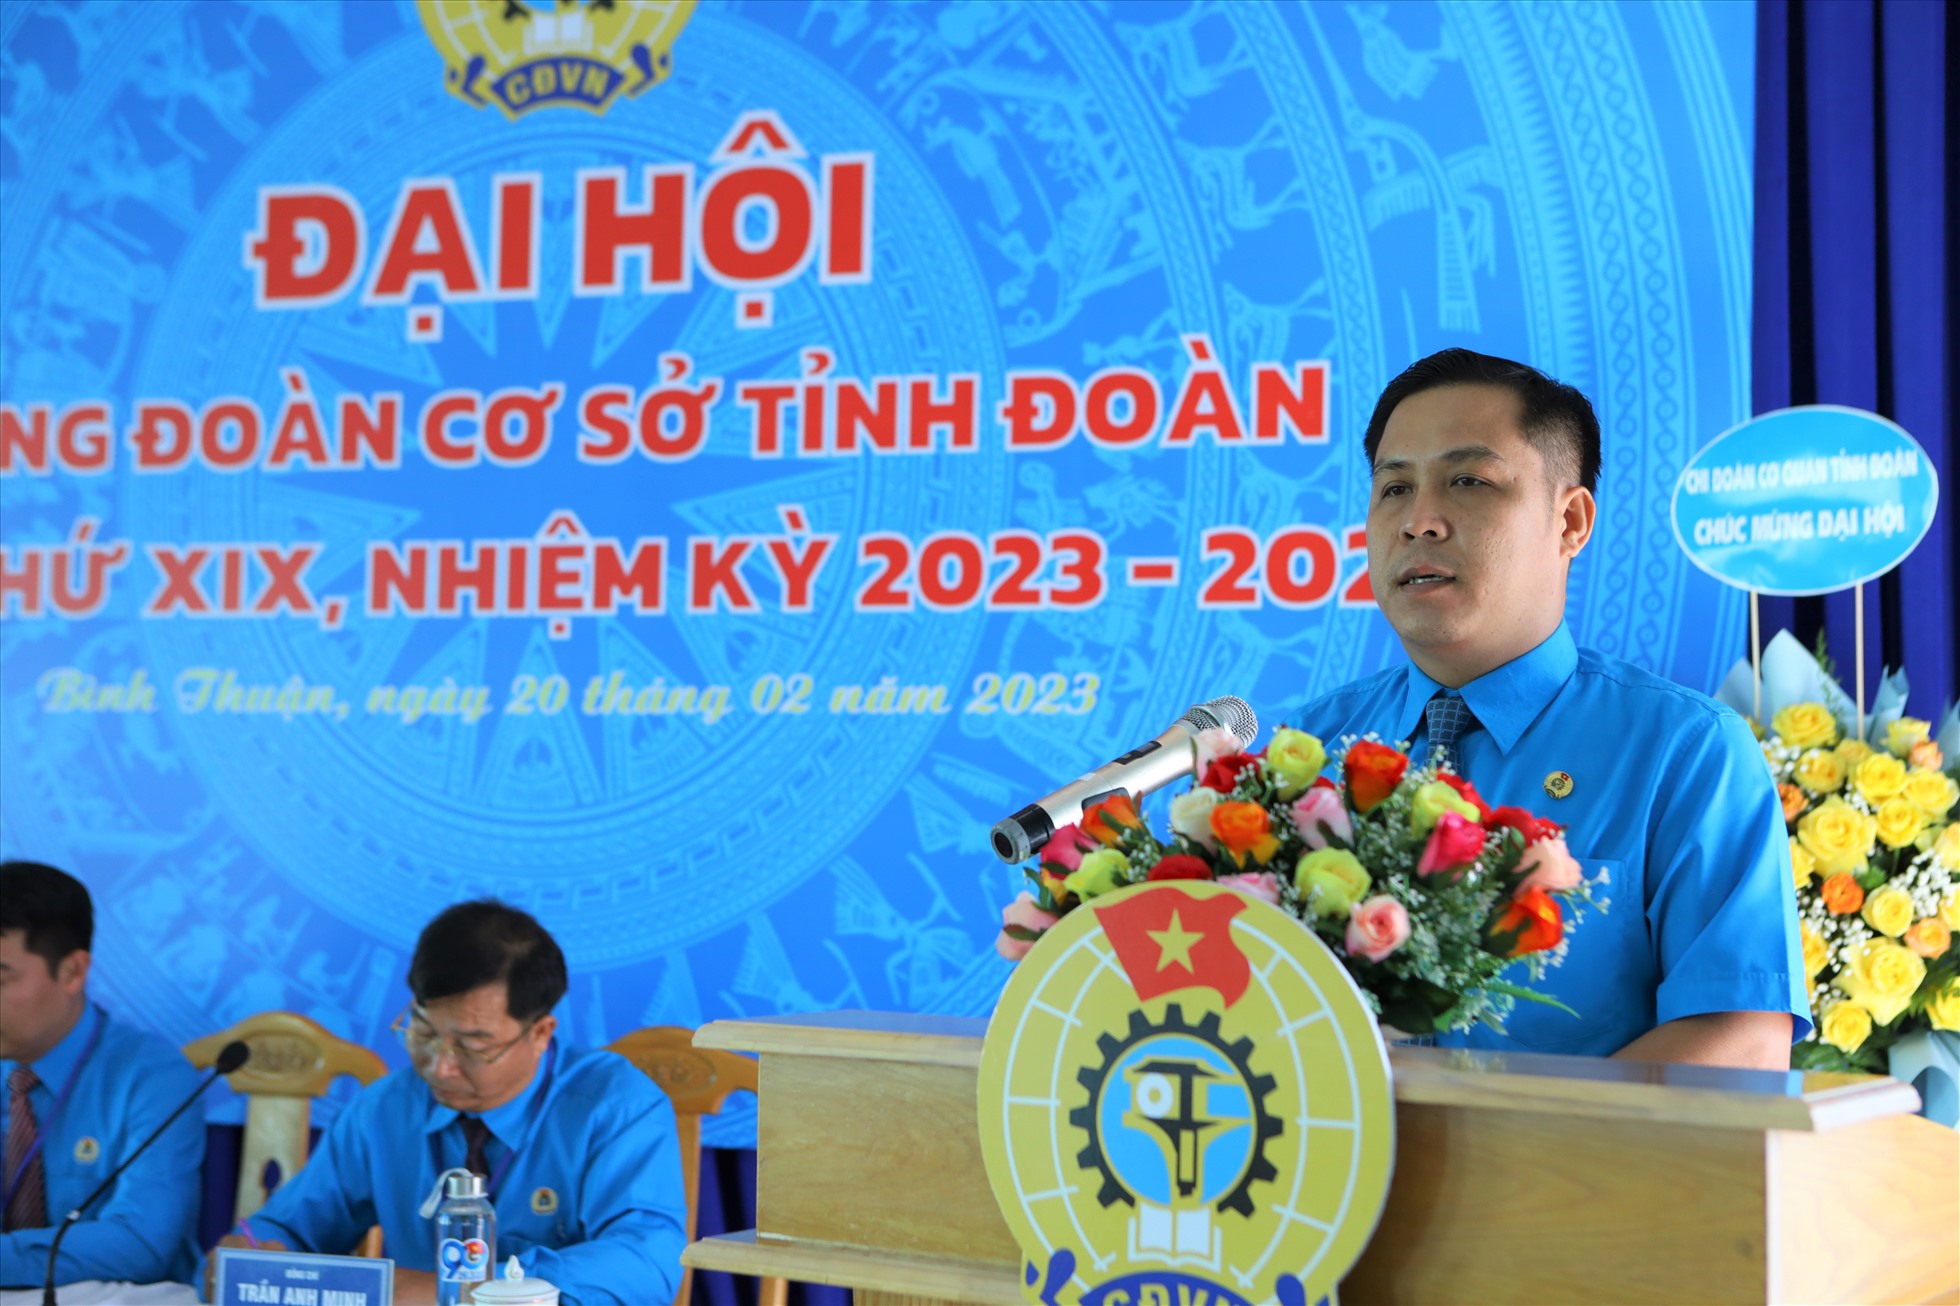 Đồng chí Trần Ngọc Phúc, chủ tịch Công đoàn Viên chức tỉnh Bình Thuận phát biểu chỉ đạo tại đại hội. Ảnh: Duy Tuấn